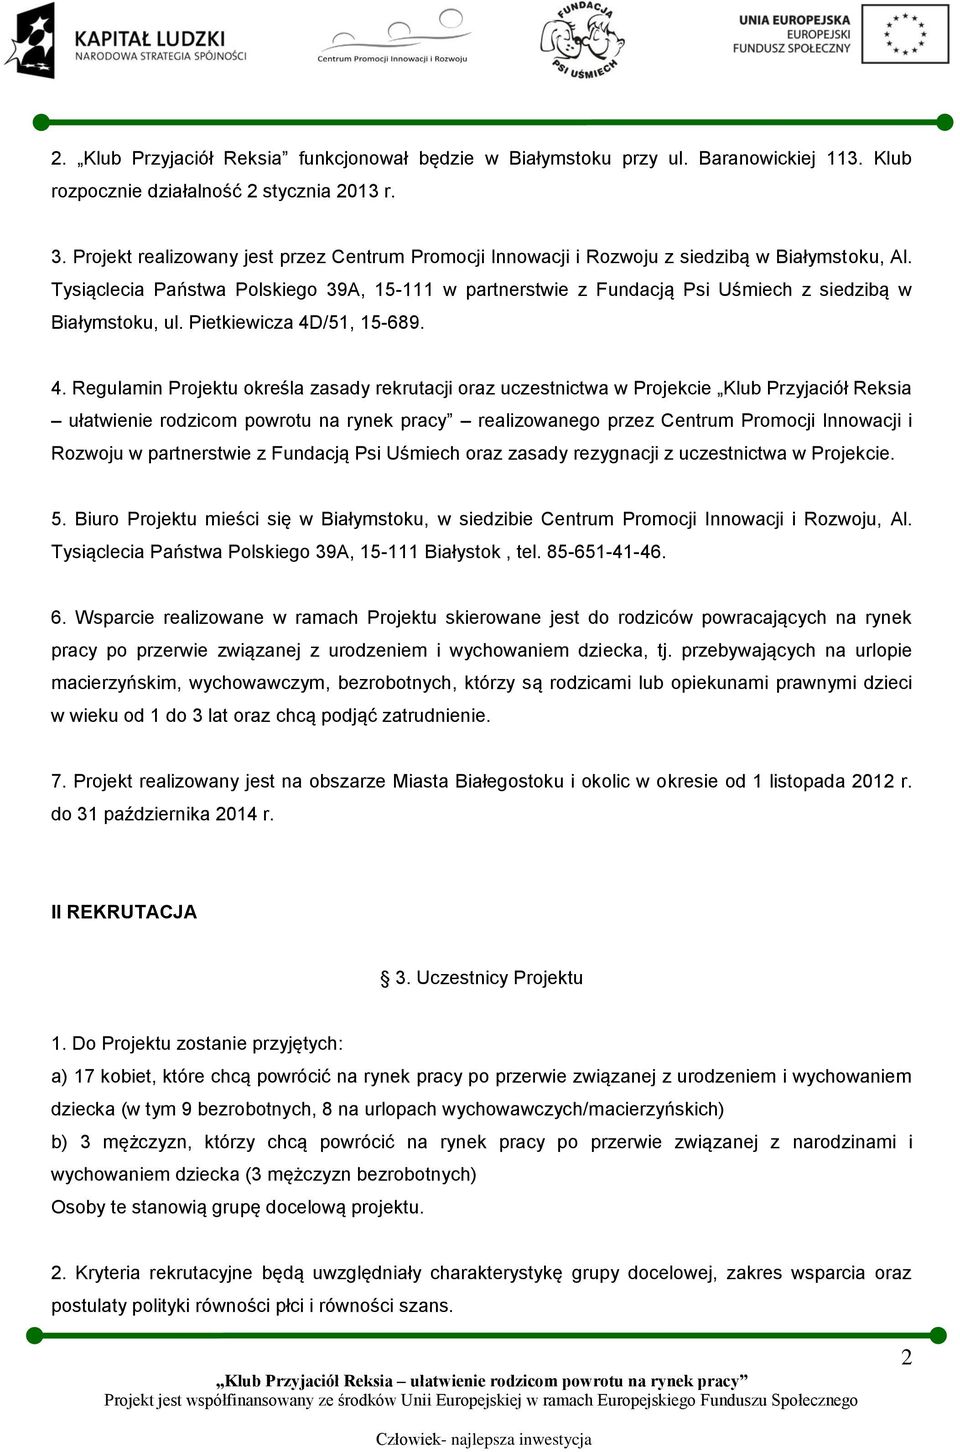 Tysiąclecia Państwa Polskiego 39A, 15-111 w partnerstwie z Fundacją Psi Uśmiech z siedzibą w Białymstoku, ul. Pietkiewicza 4D